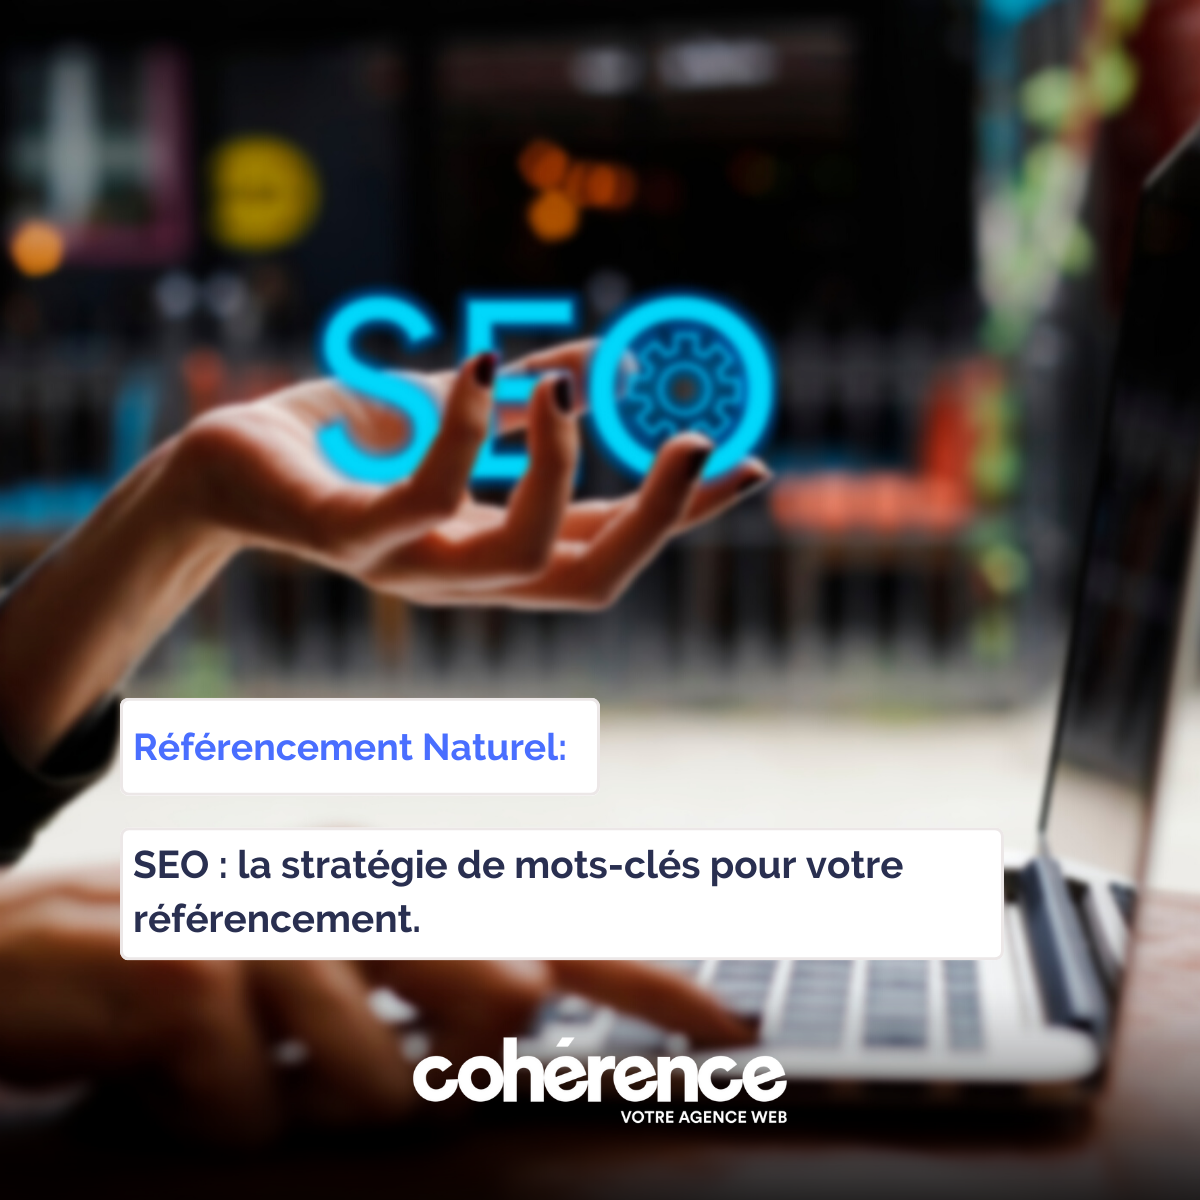 Coherence Agence Web A Rennes SEO La Strategie De Mots Cles Pour Votre Referencement